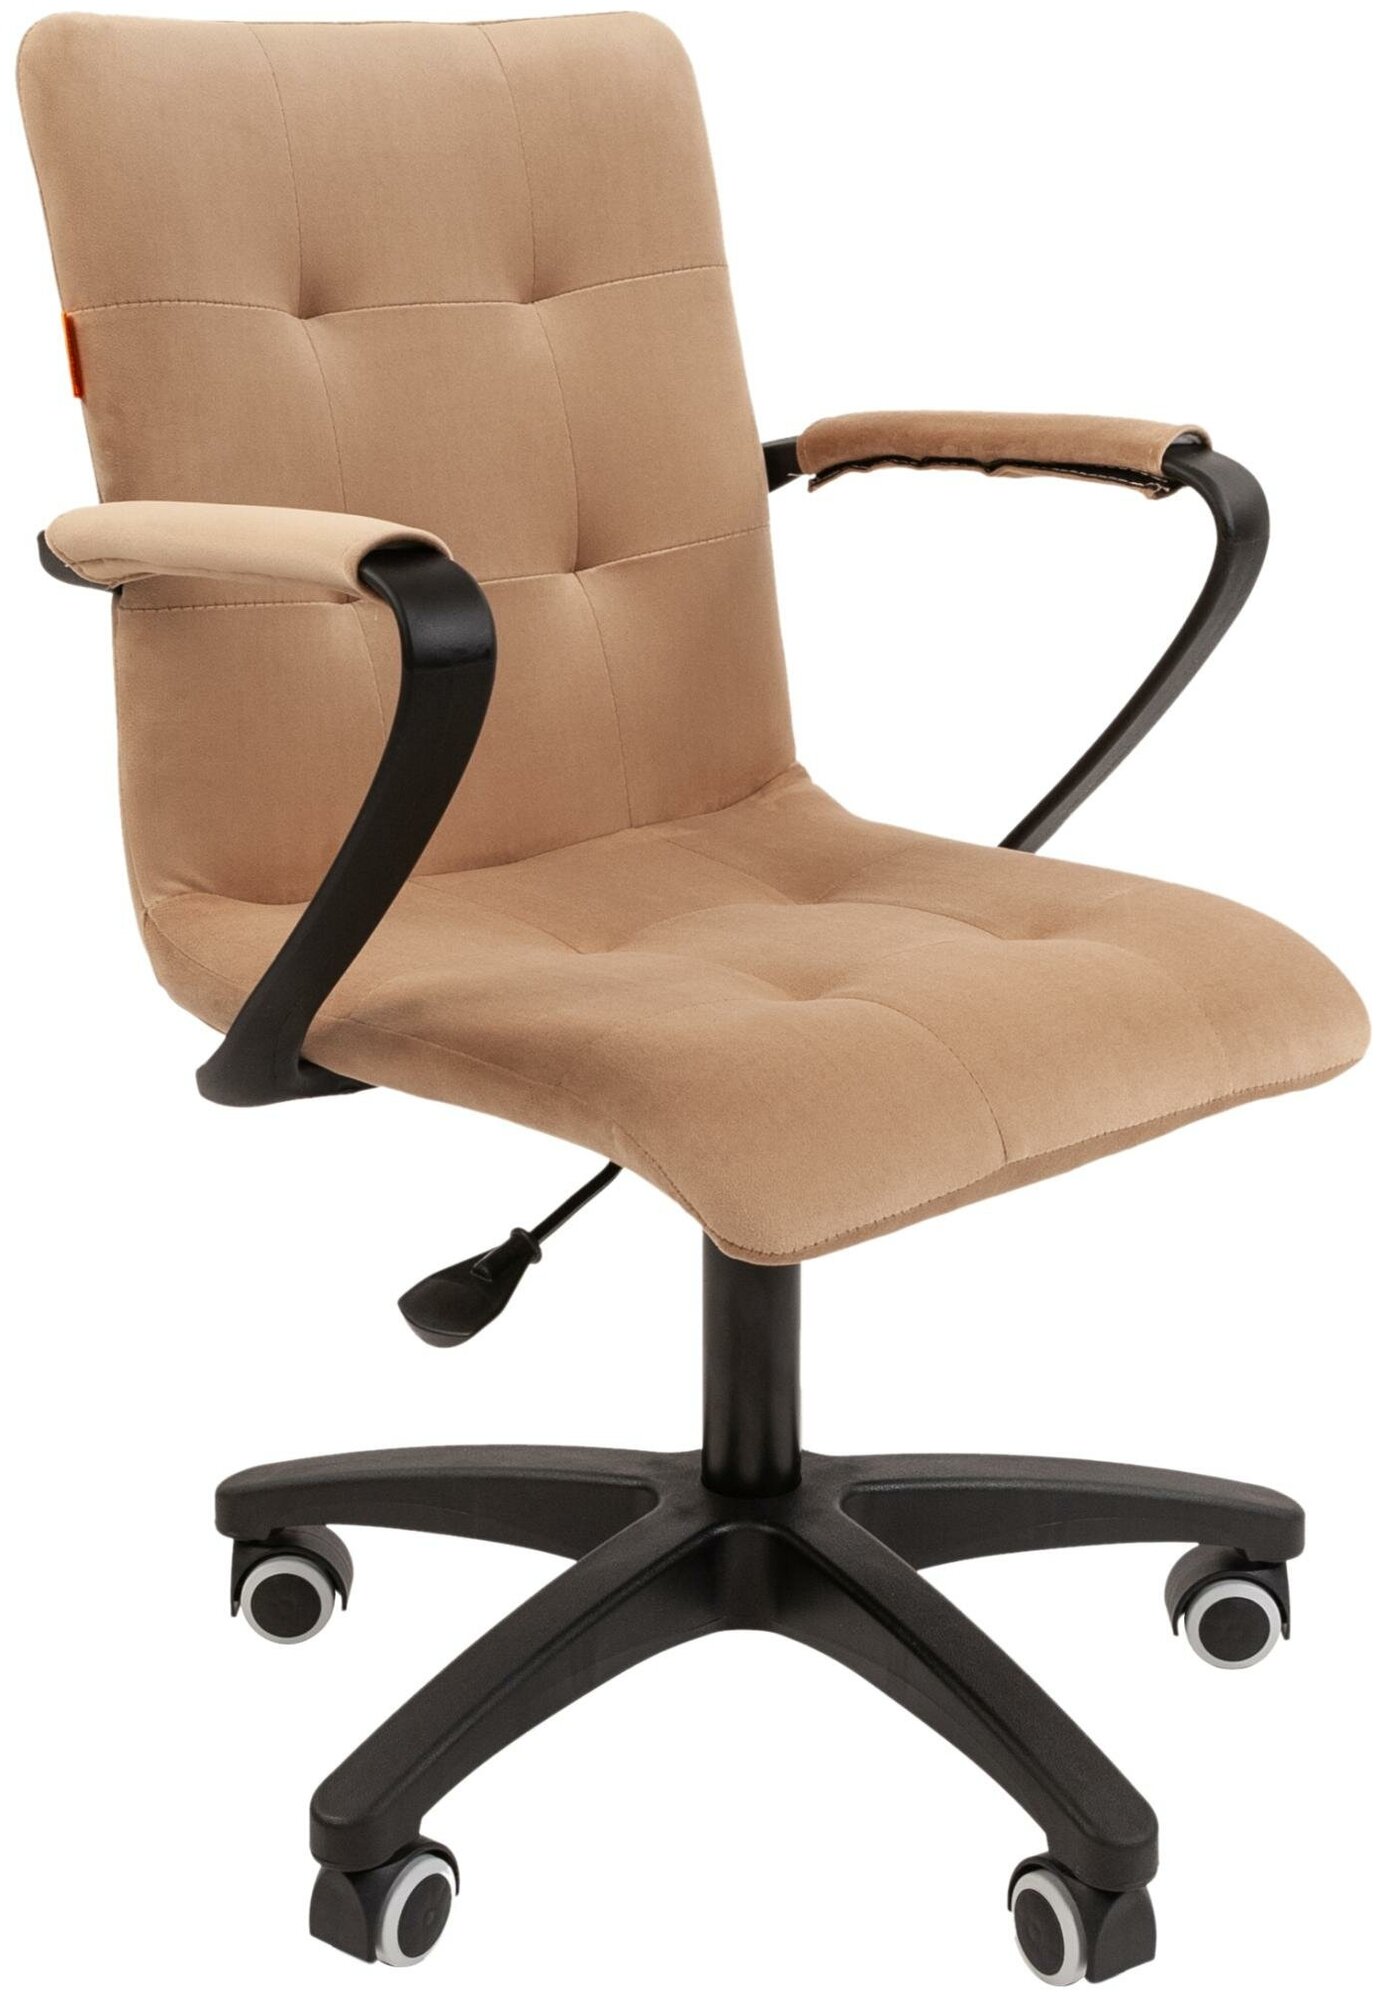 Компьютерное кресло Chairman 030 Т-10 офисное (обивка: велюр, крестовина полиуретан, с подлокотниками, Biege)